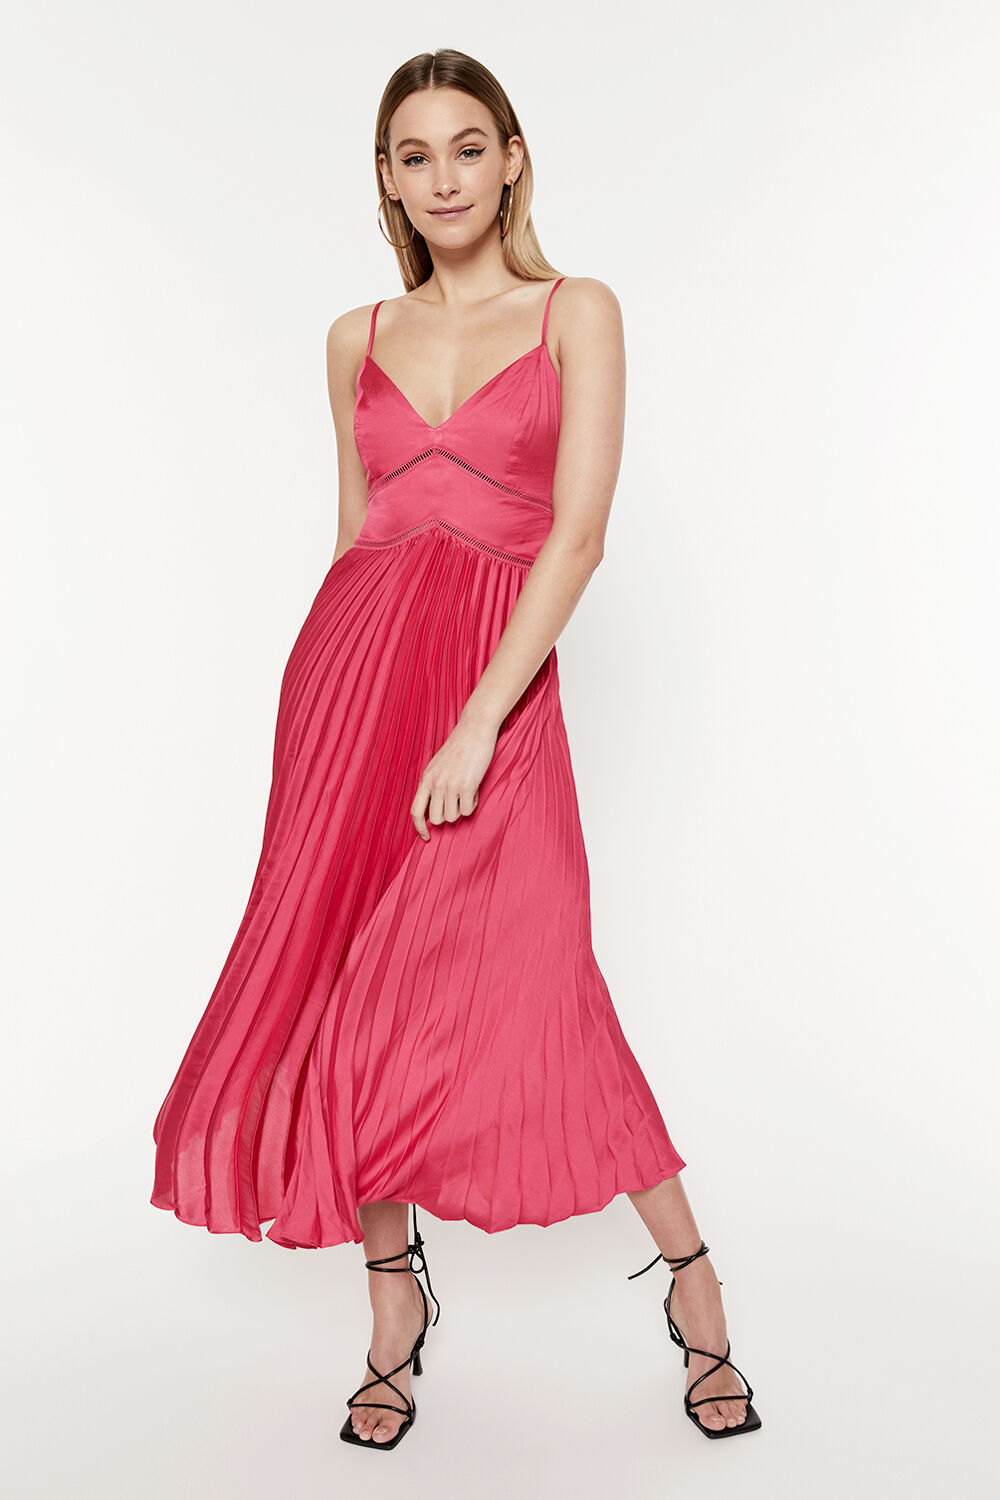 Mary Pleated Dress in Magenta | Bardot